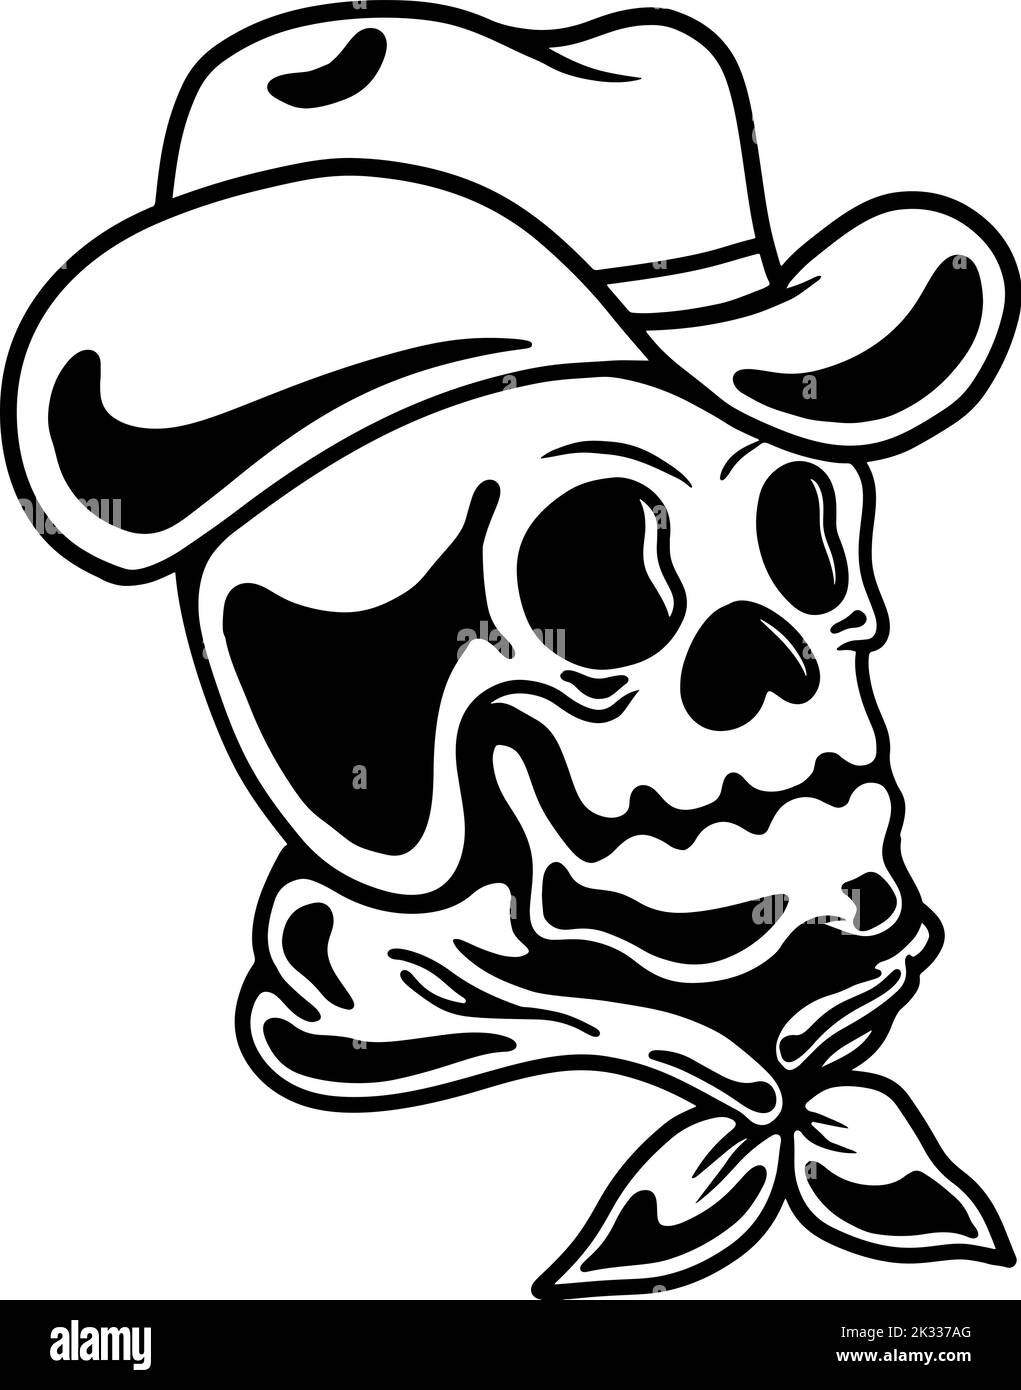 Illustration of cowboy skull. Design element for poster, card, banner, emblem, sign. Vector illustration Stock Vector